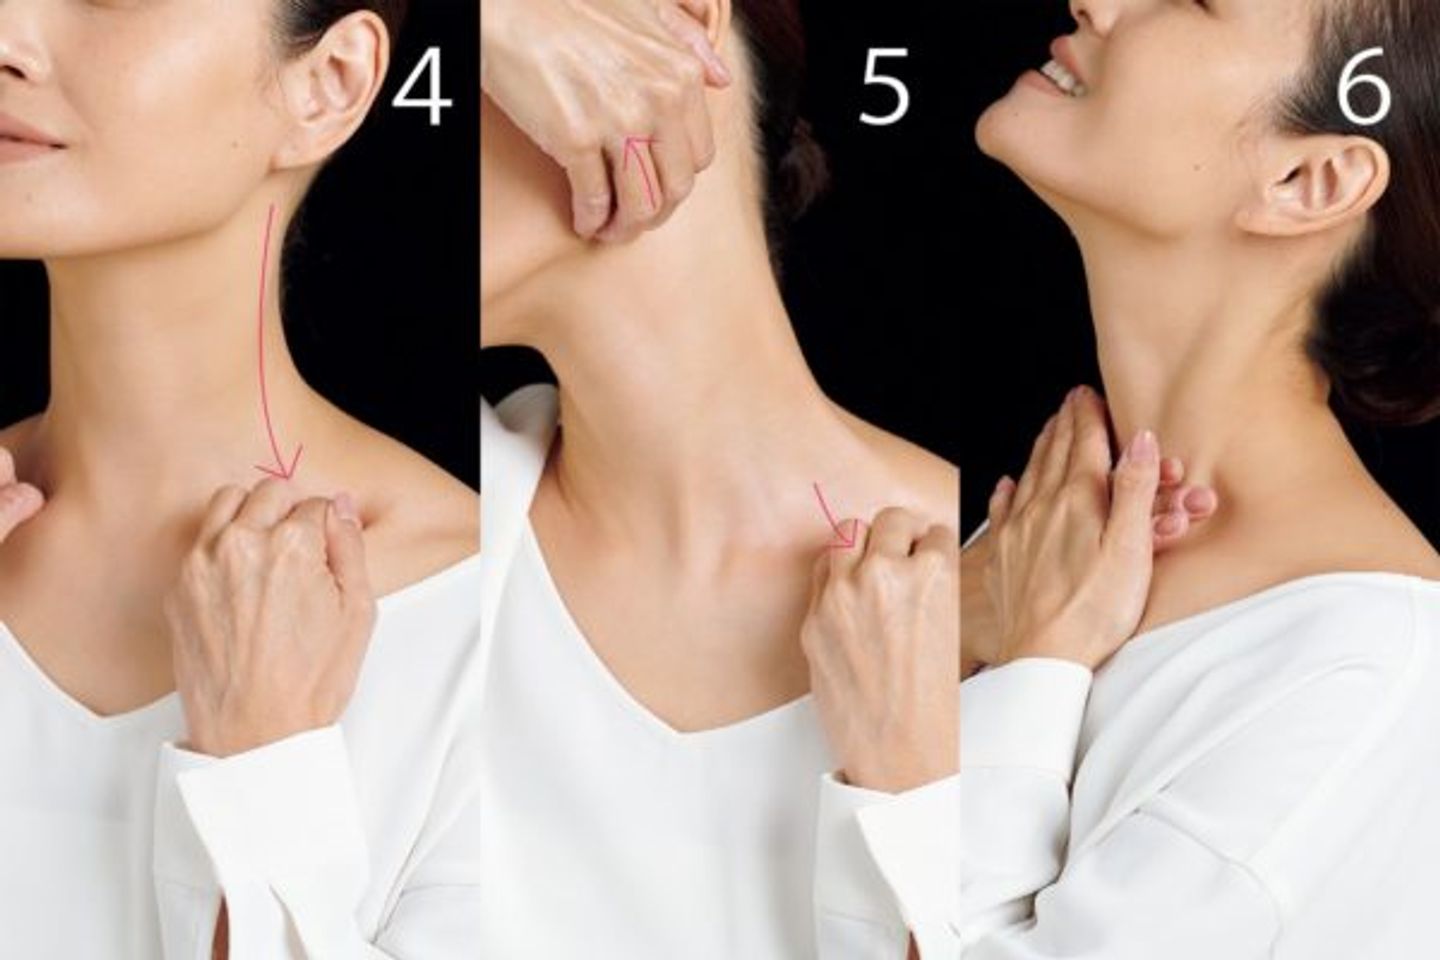 Hướng dẫn các động tác massage cơ bản cho vùng da cổ 